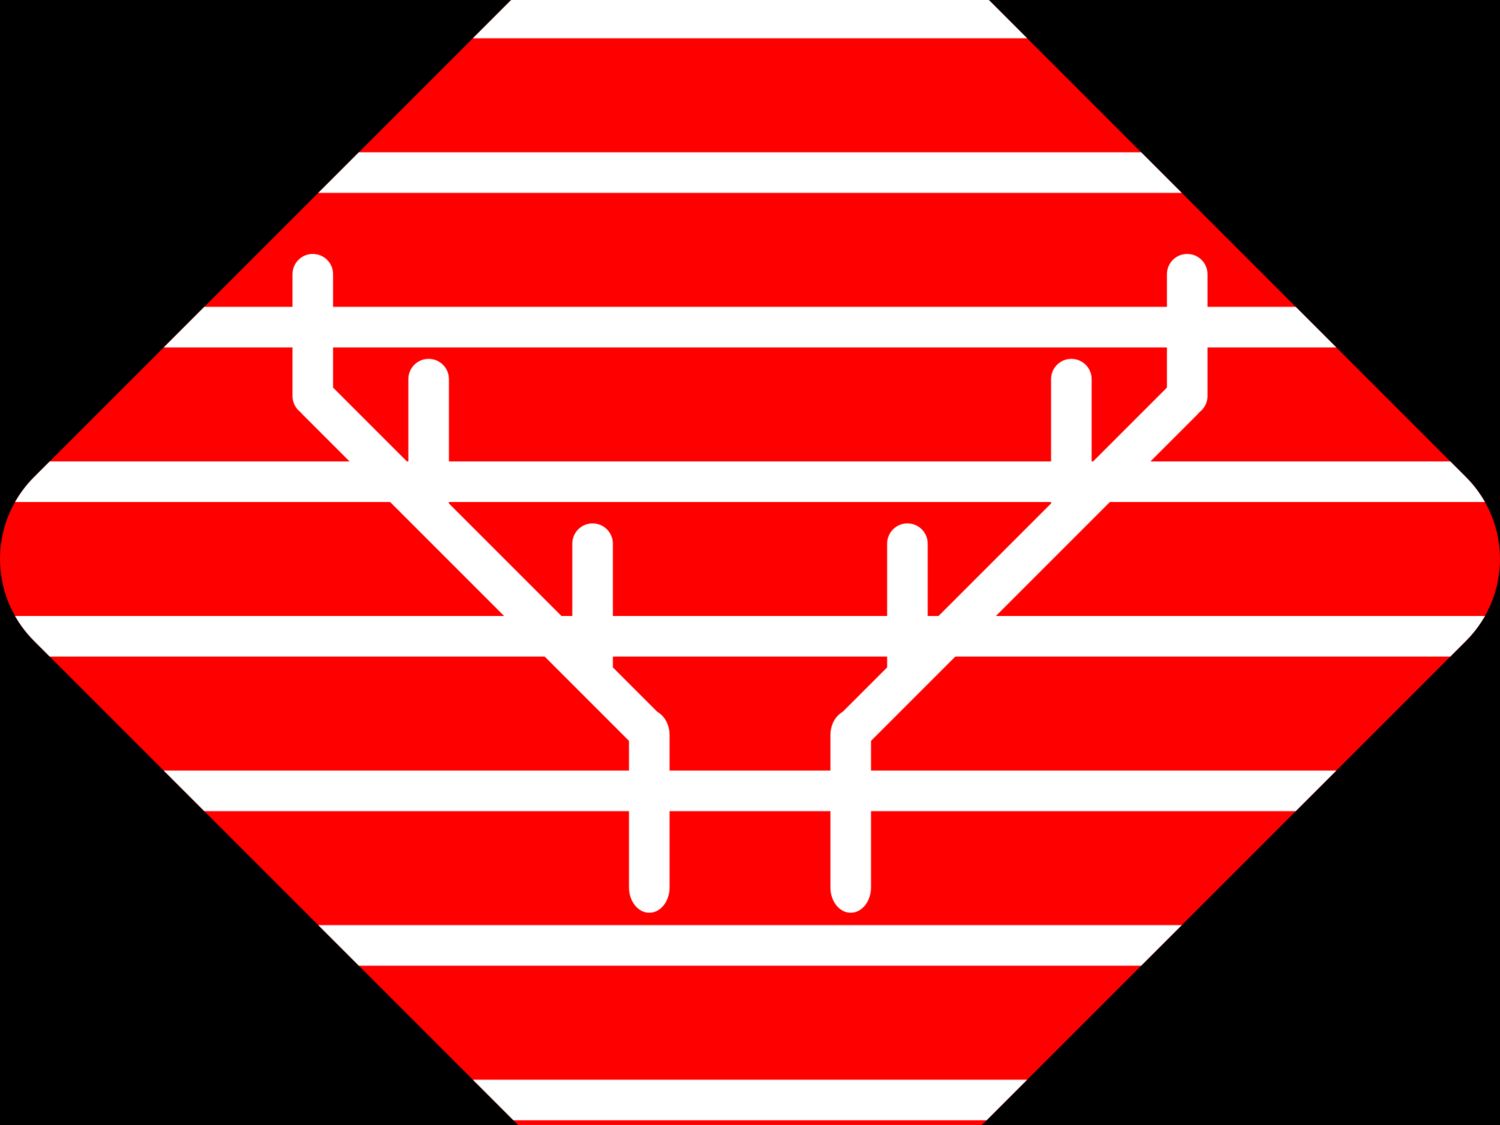 Hidden Stag brand logo